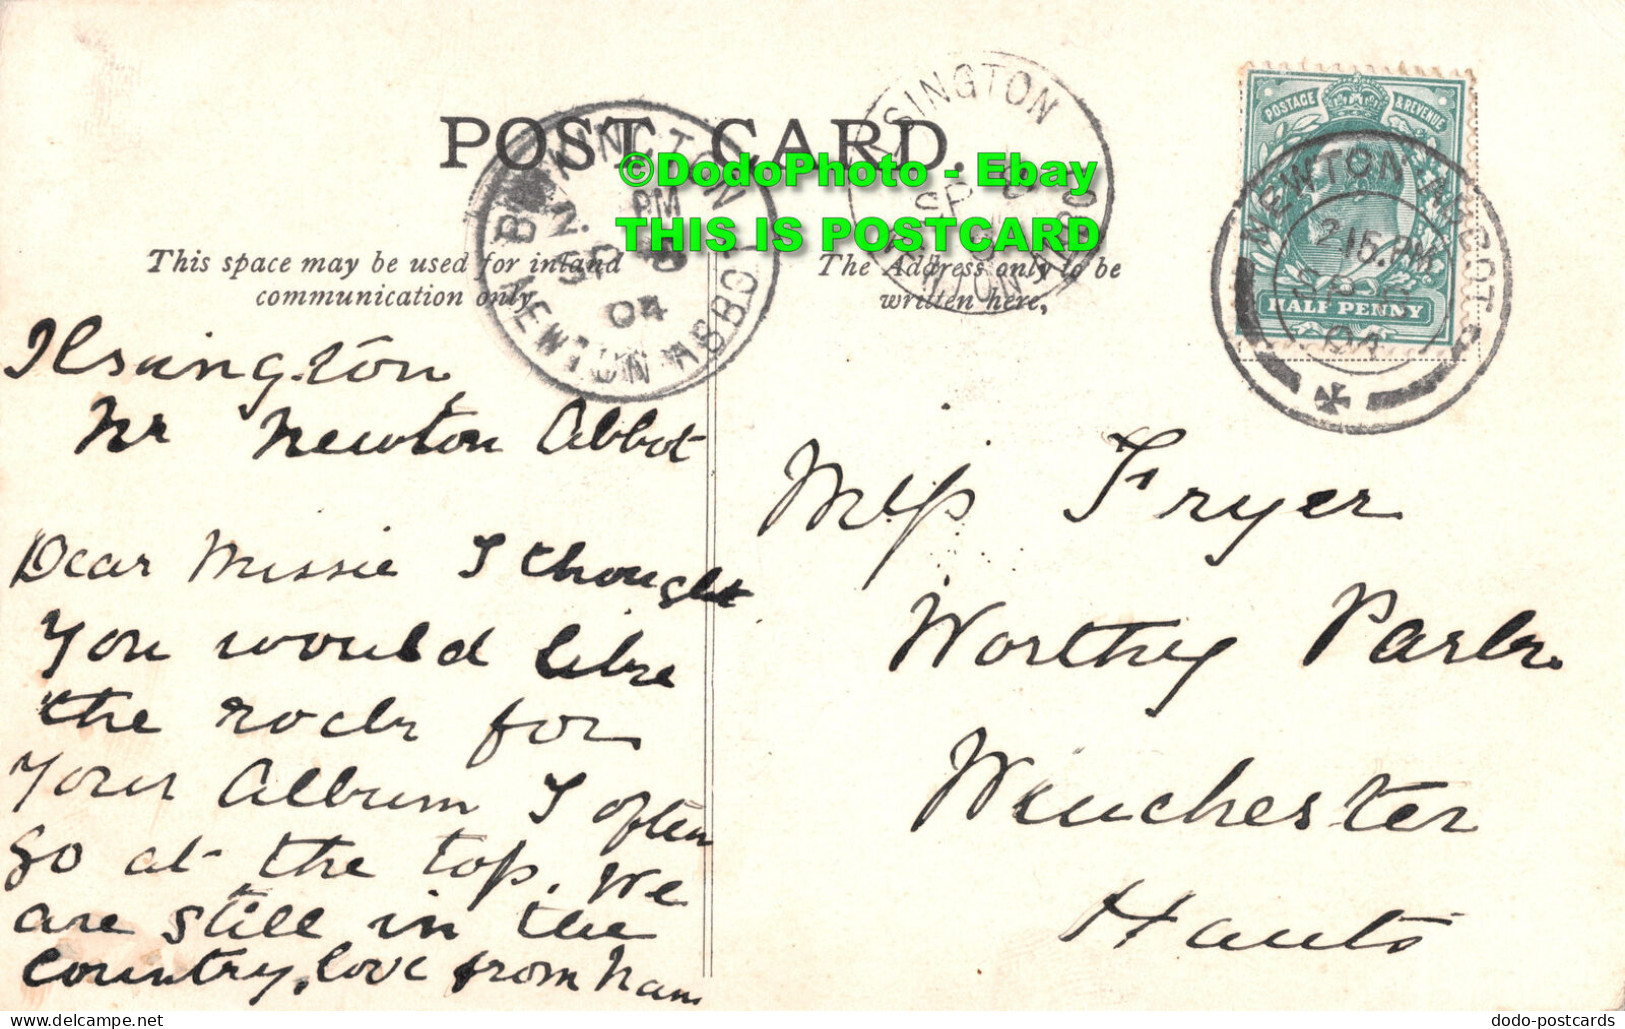 R415617 Hay Tor Rock. 1904 - Monde